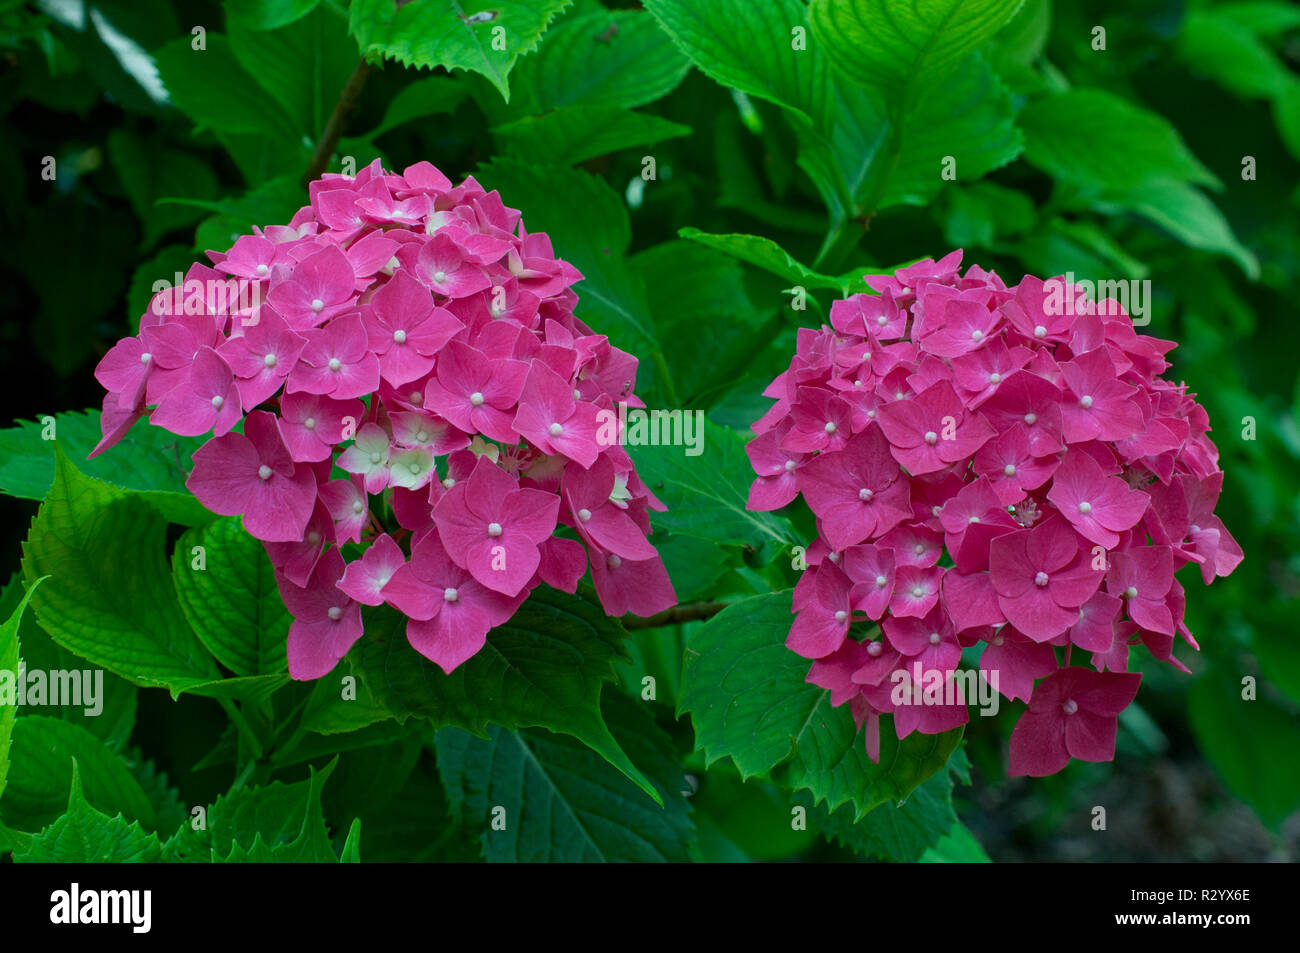 Hydrangea 'Leuchtfeuer' in bloom in a garden Stock Photo